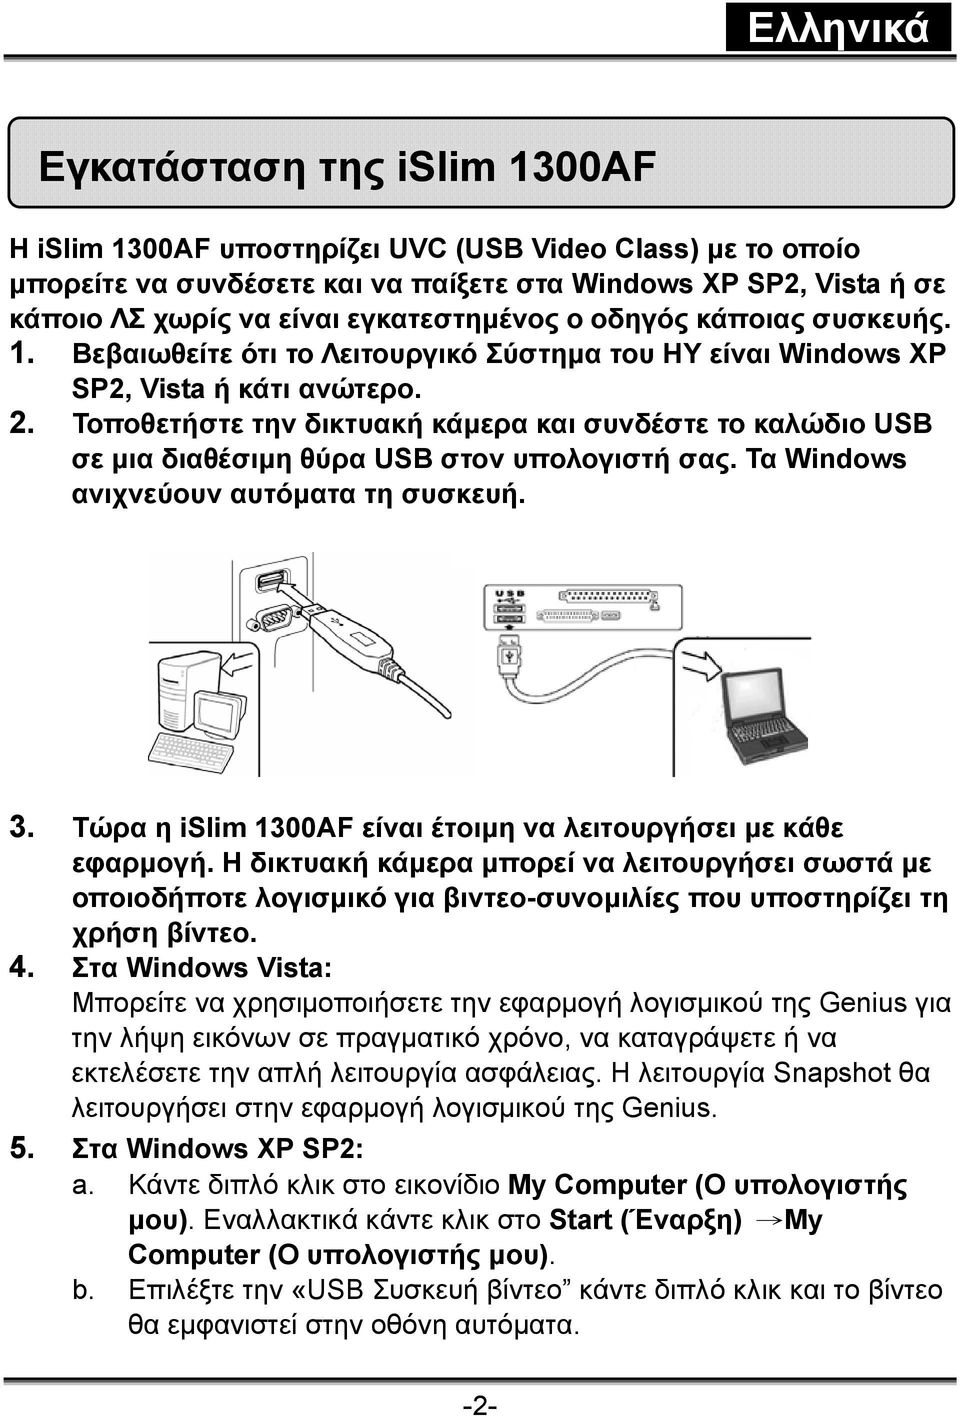 Τοποθετήστε την δικτυακή κάμερα και συνδέστε το καλώδιο USB σε μια διαθέσιμη θύρα USB στον υπολογιστή σας. Τα Windows ανιχνεύουν αυτόματα τη συσκευή. 3.